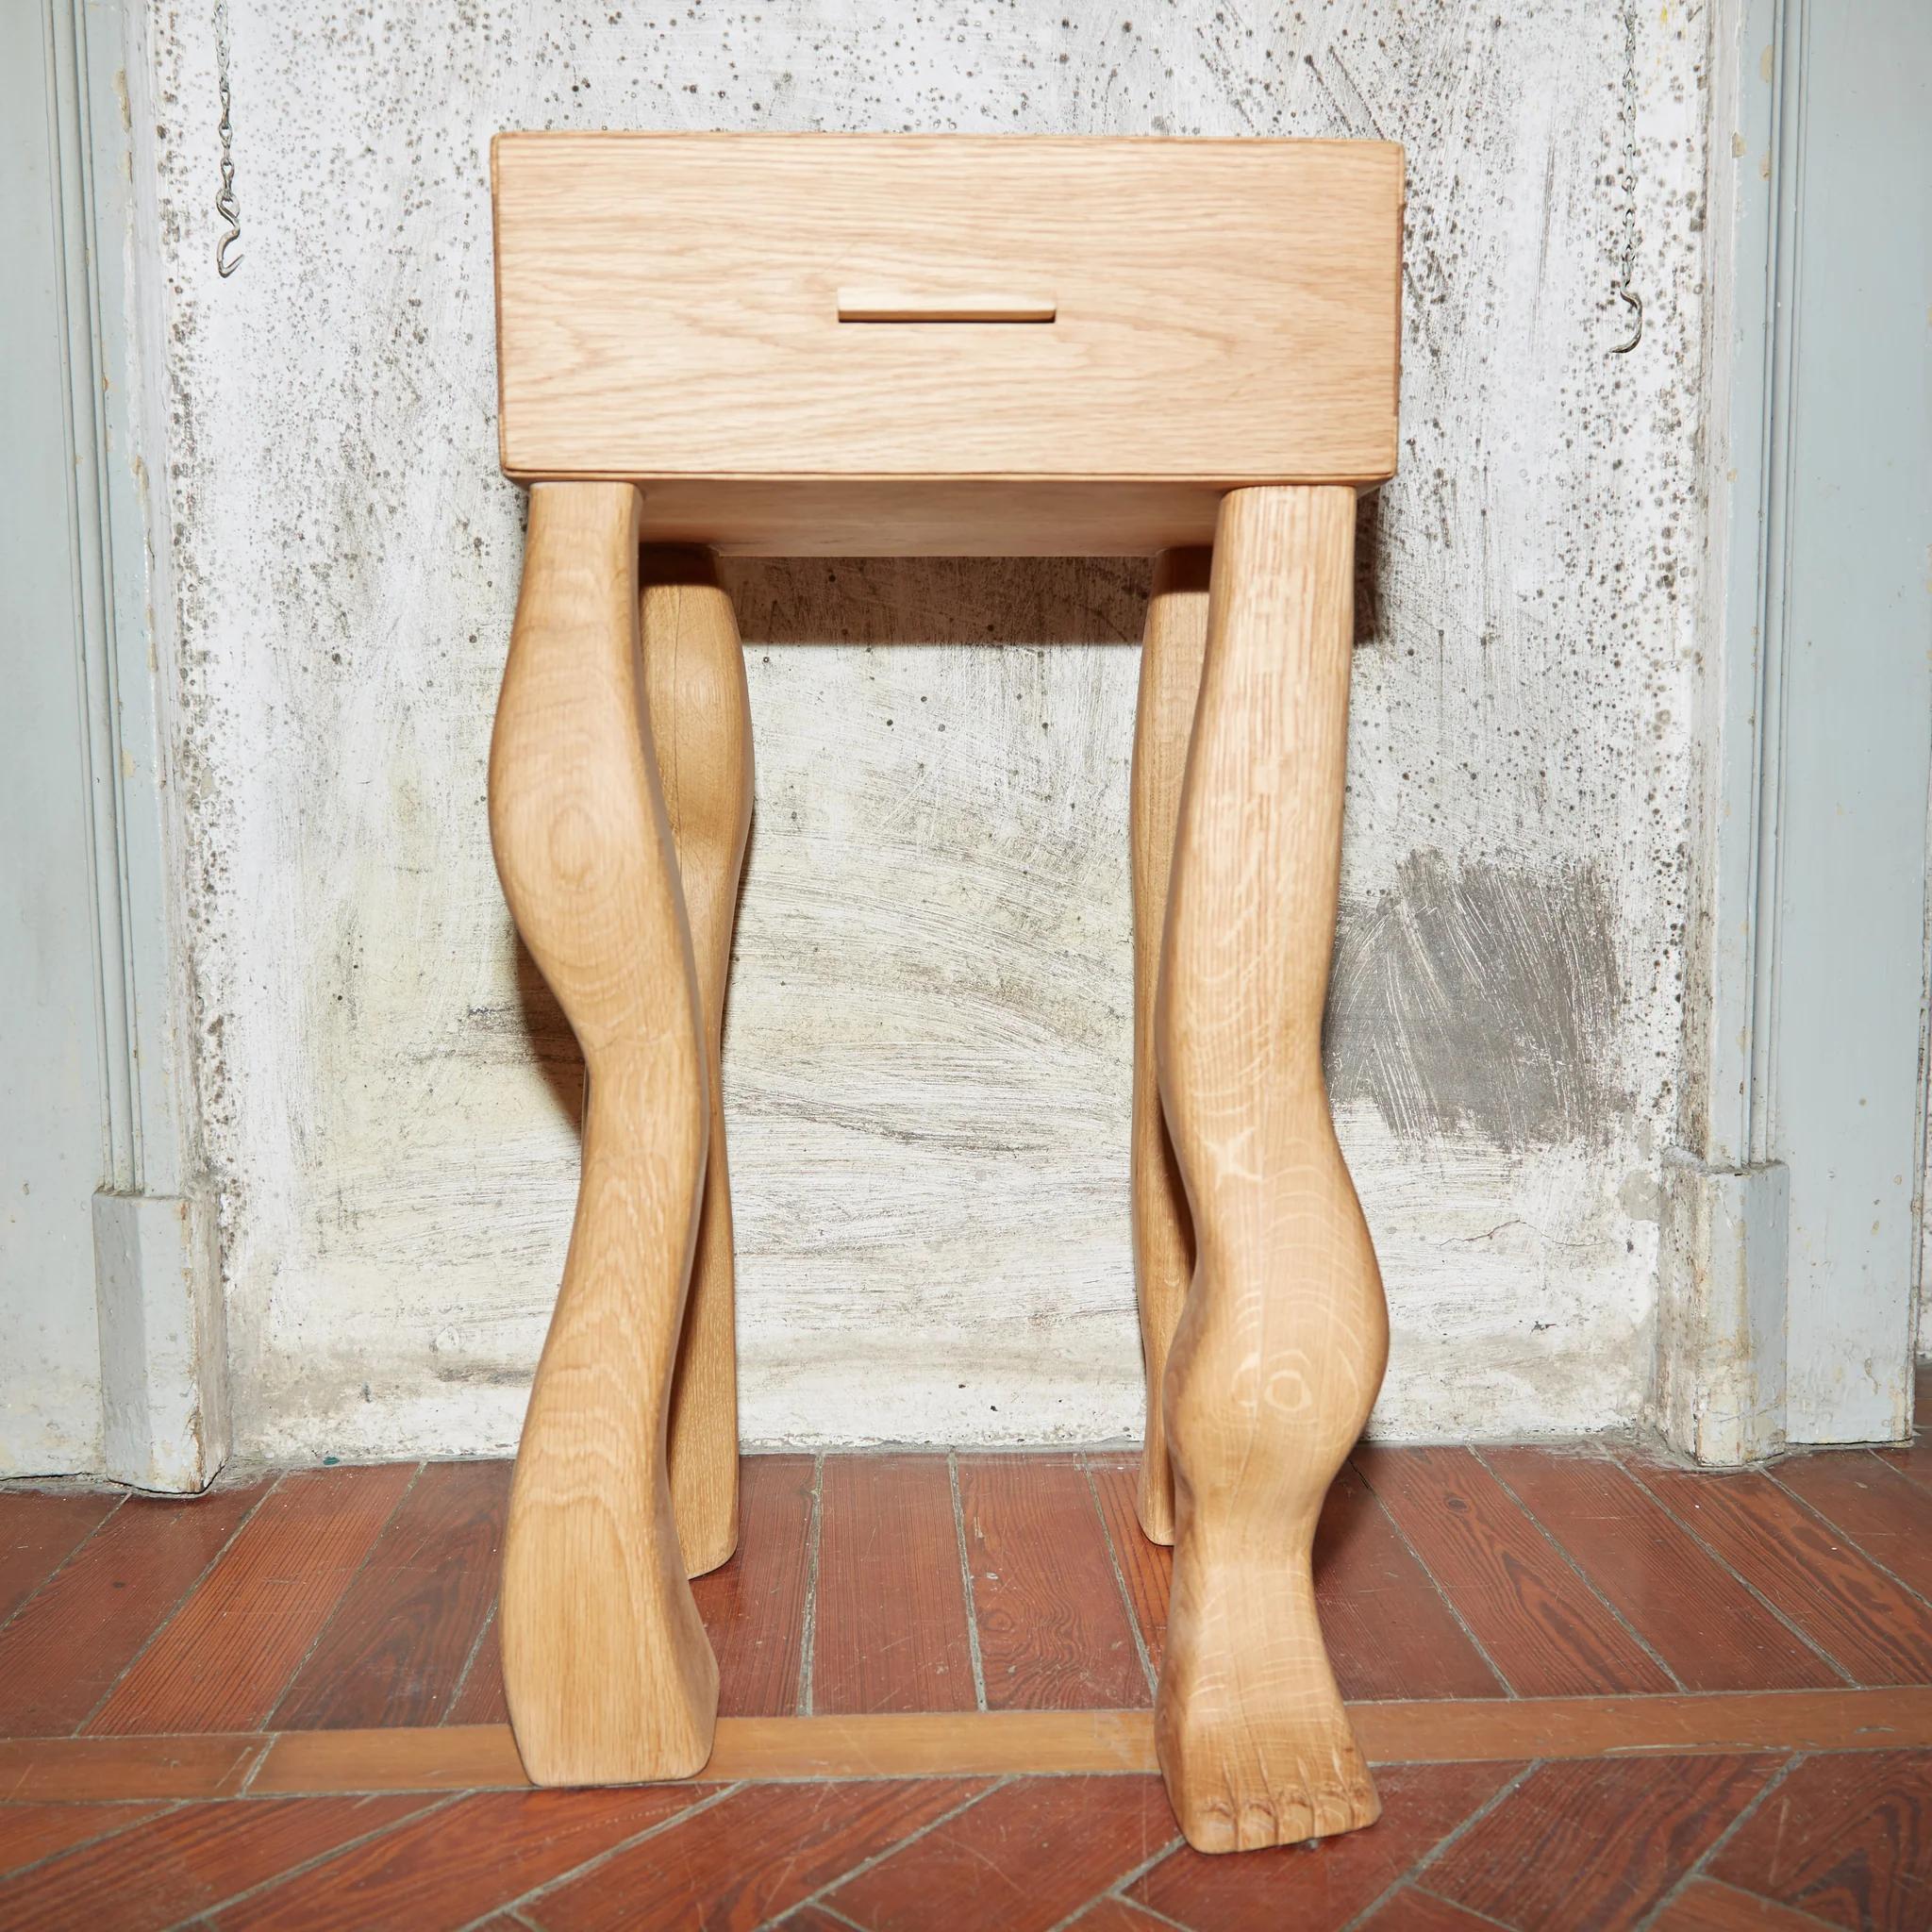 Table d'appoint à pieds avec tiroir par Project 213A
Dimensions : L 32 x D 28 x H 62 cm
Matériaux : Chêne

La table d'appoint Foot est fabriquée en bois de chêne avec des détails d'assemblage soigneusement conçus. Le tiroir repose sur 4 pieds